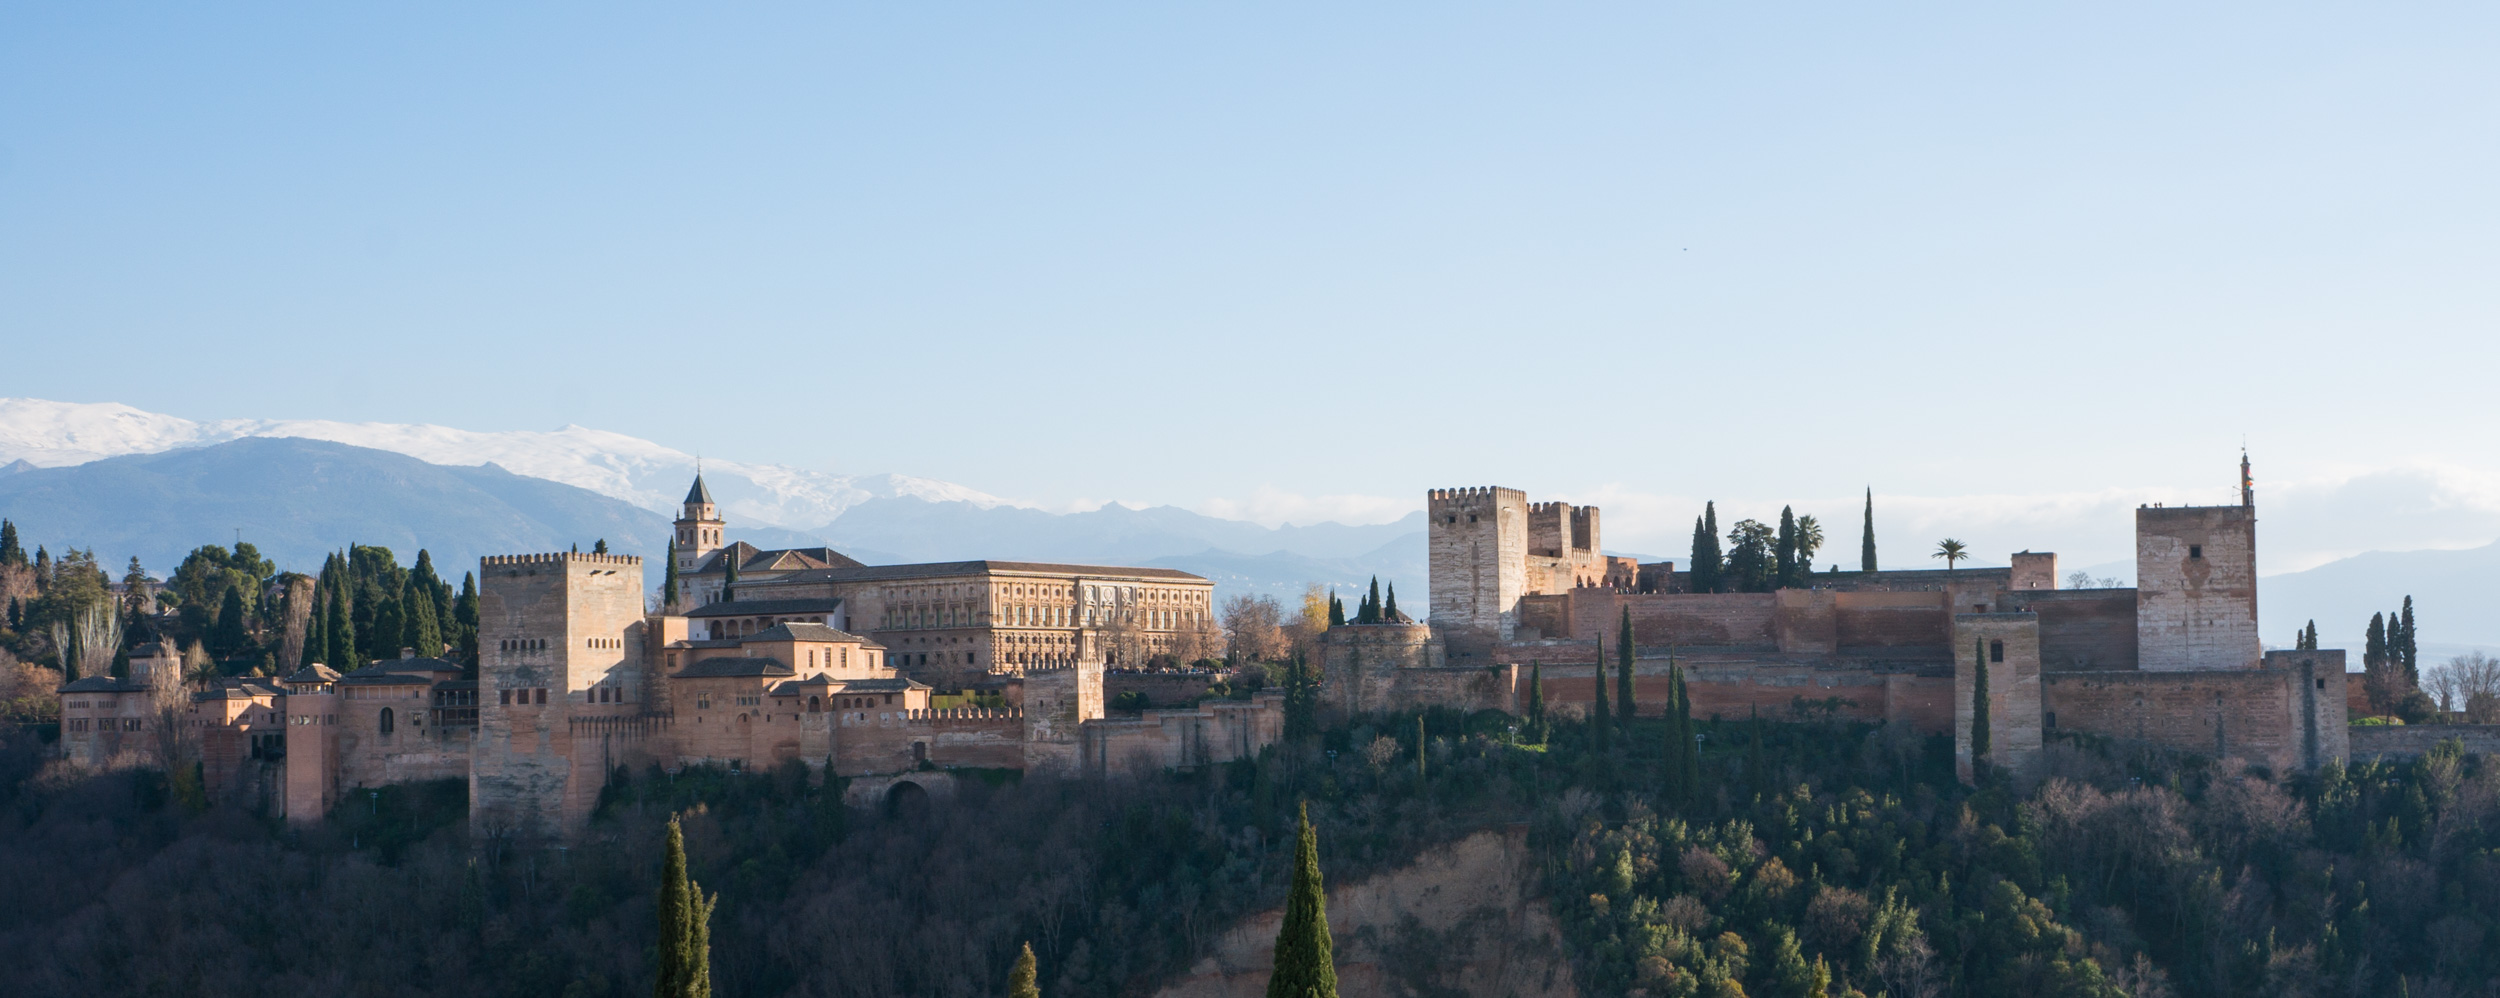 Die Alhambra in Granada entdecken